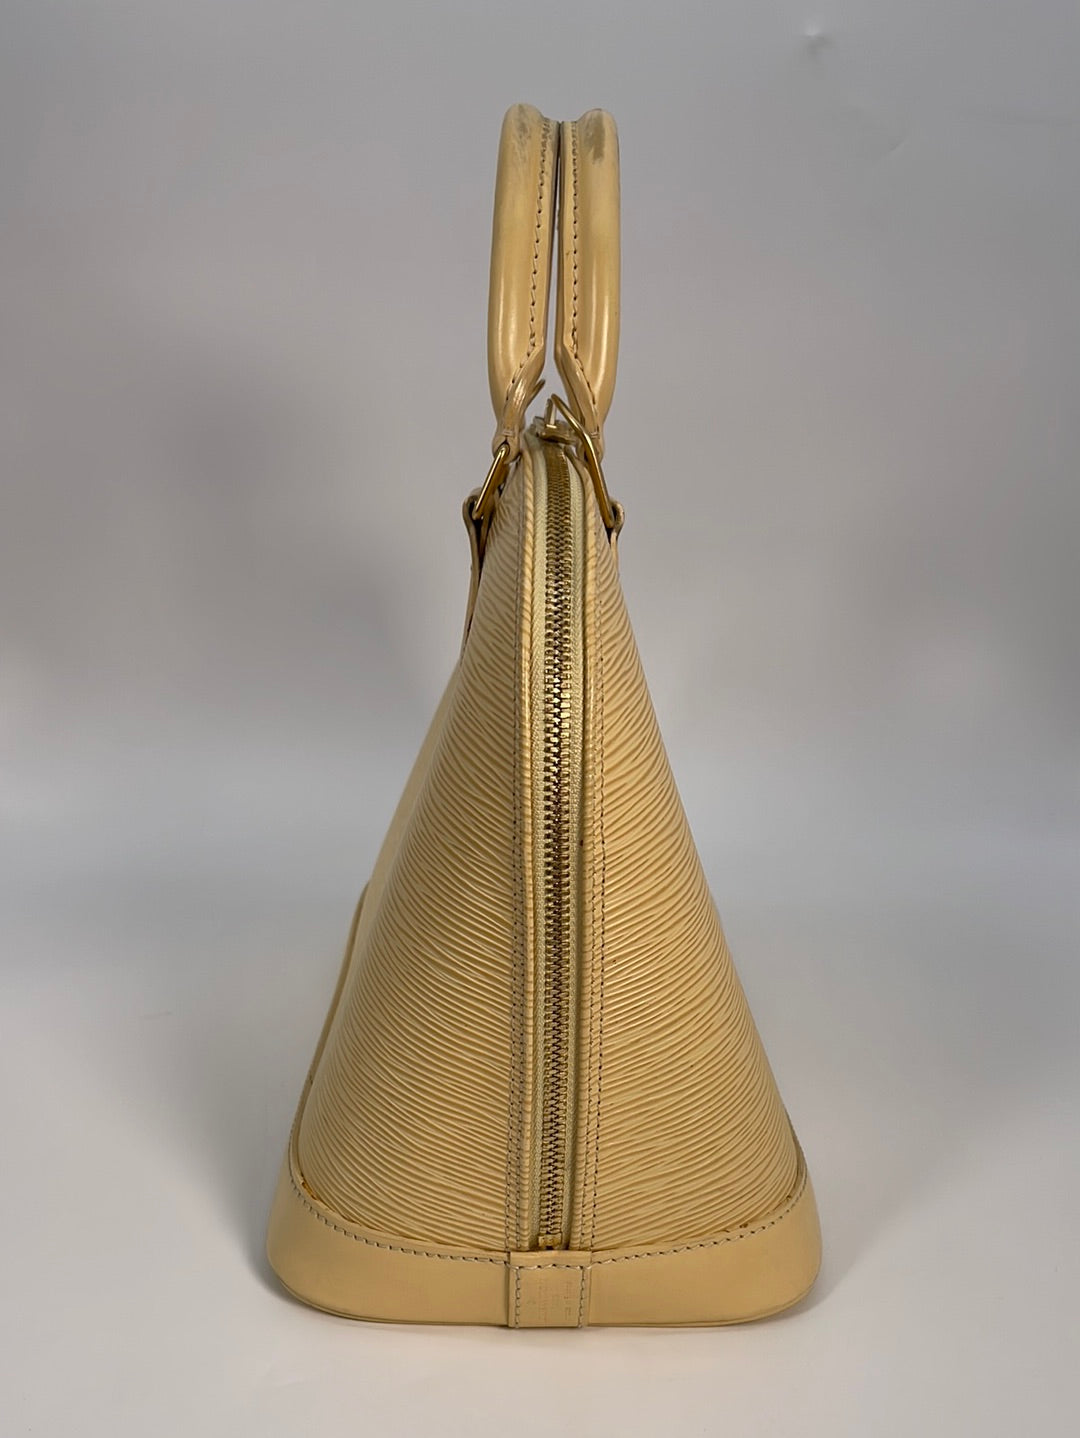 Louis Vuitton Alma Handbag 372610